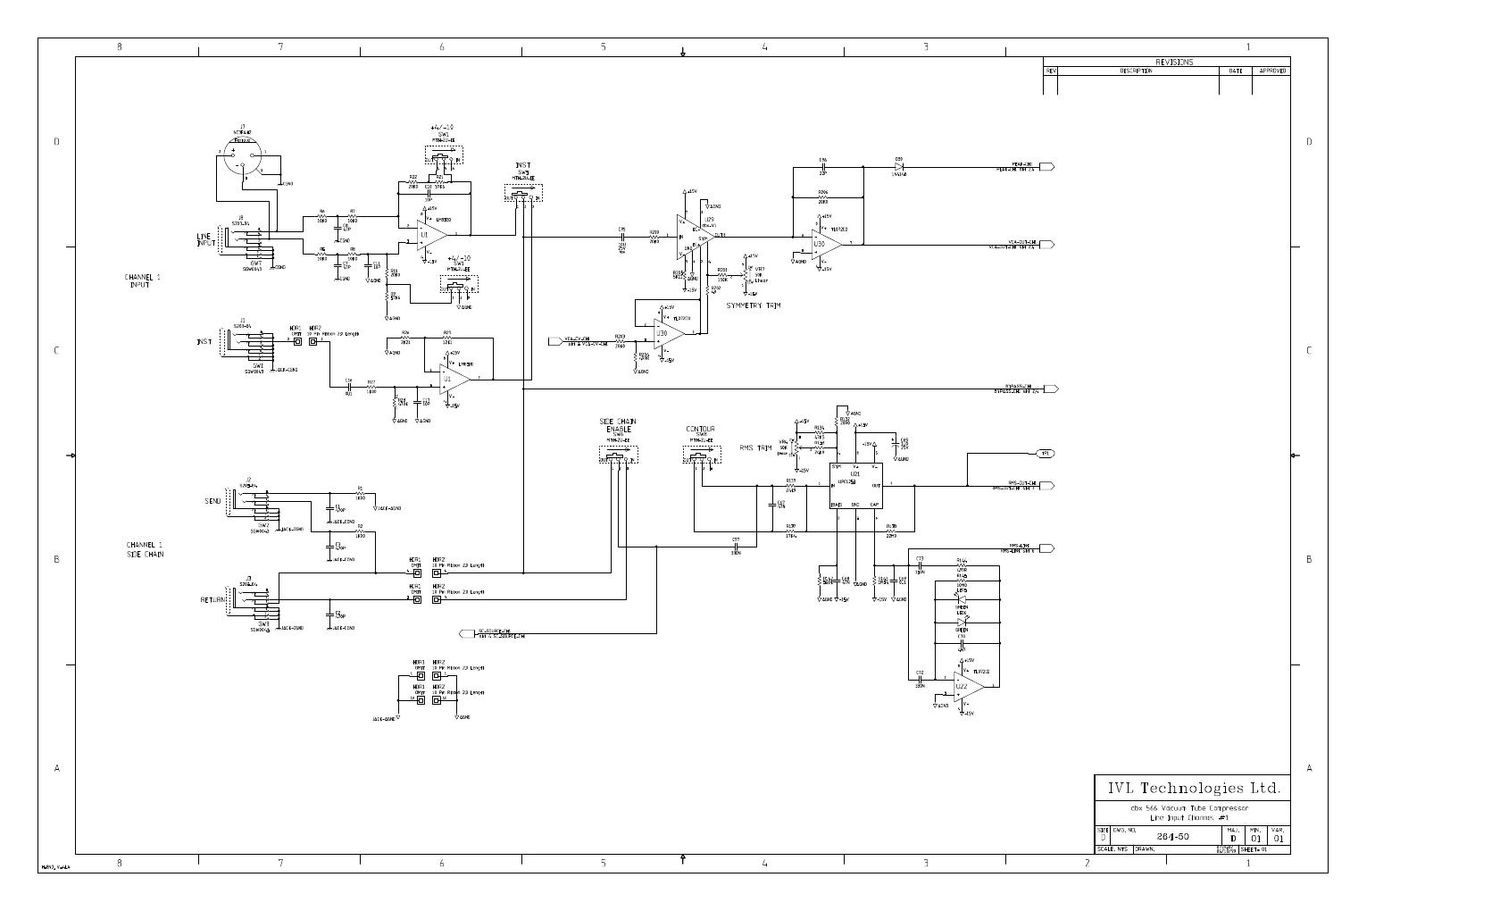 dbx 566 schematic